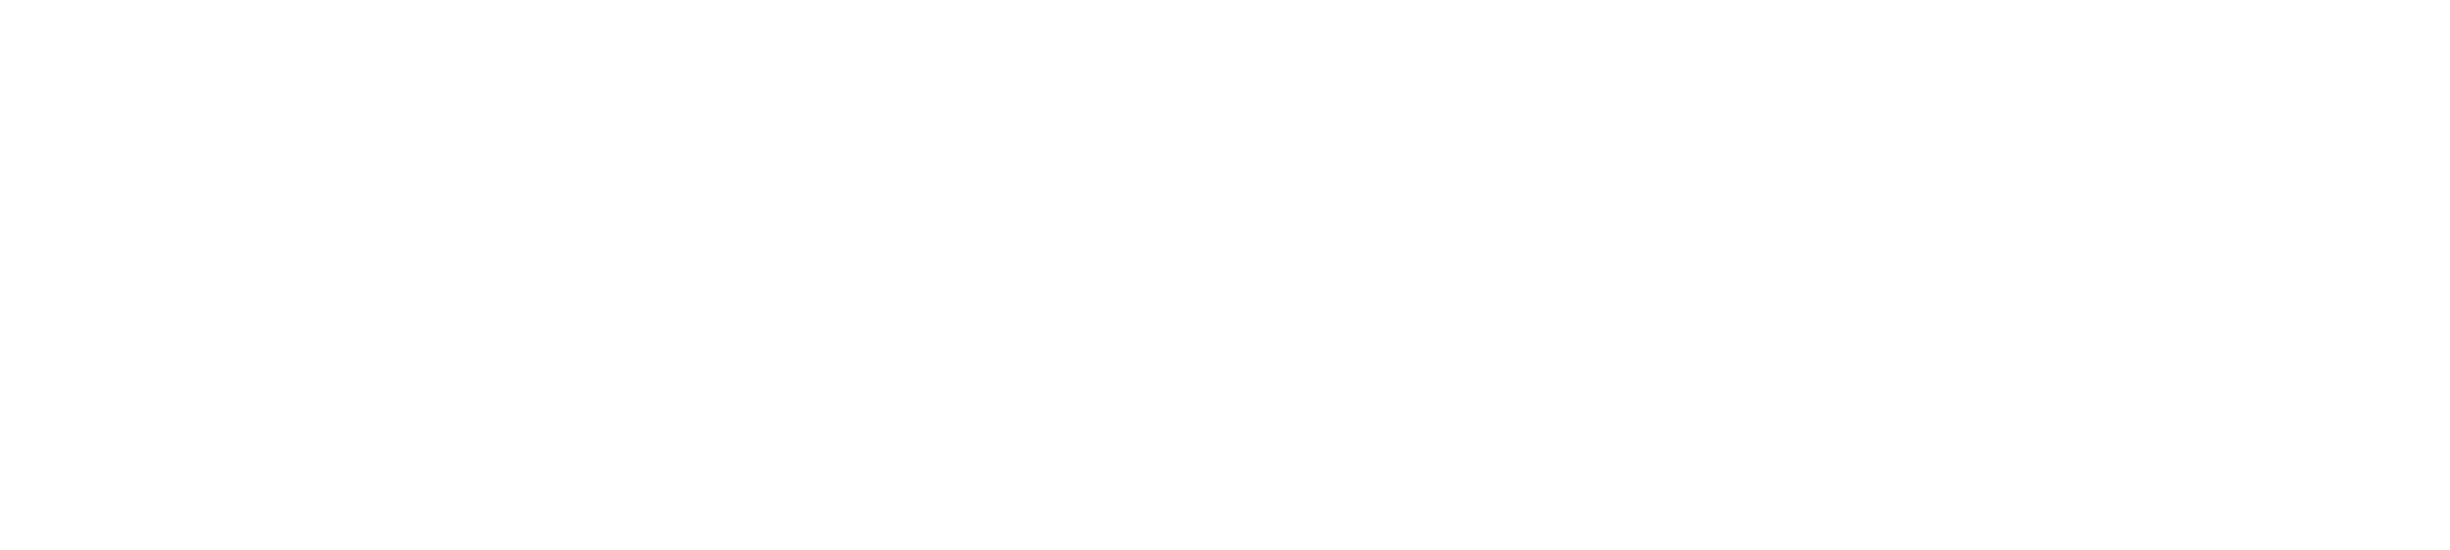 Storyblocks-logo_white-1